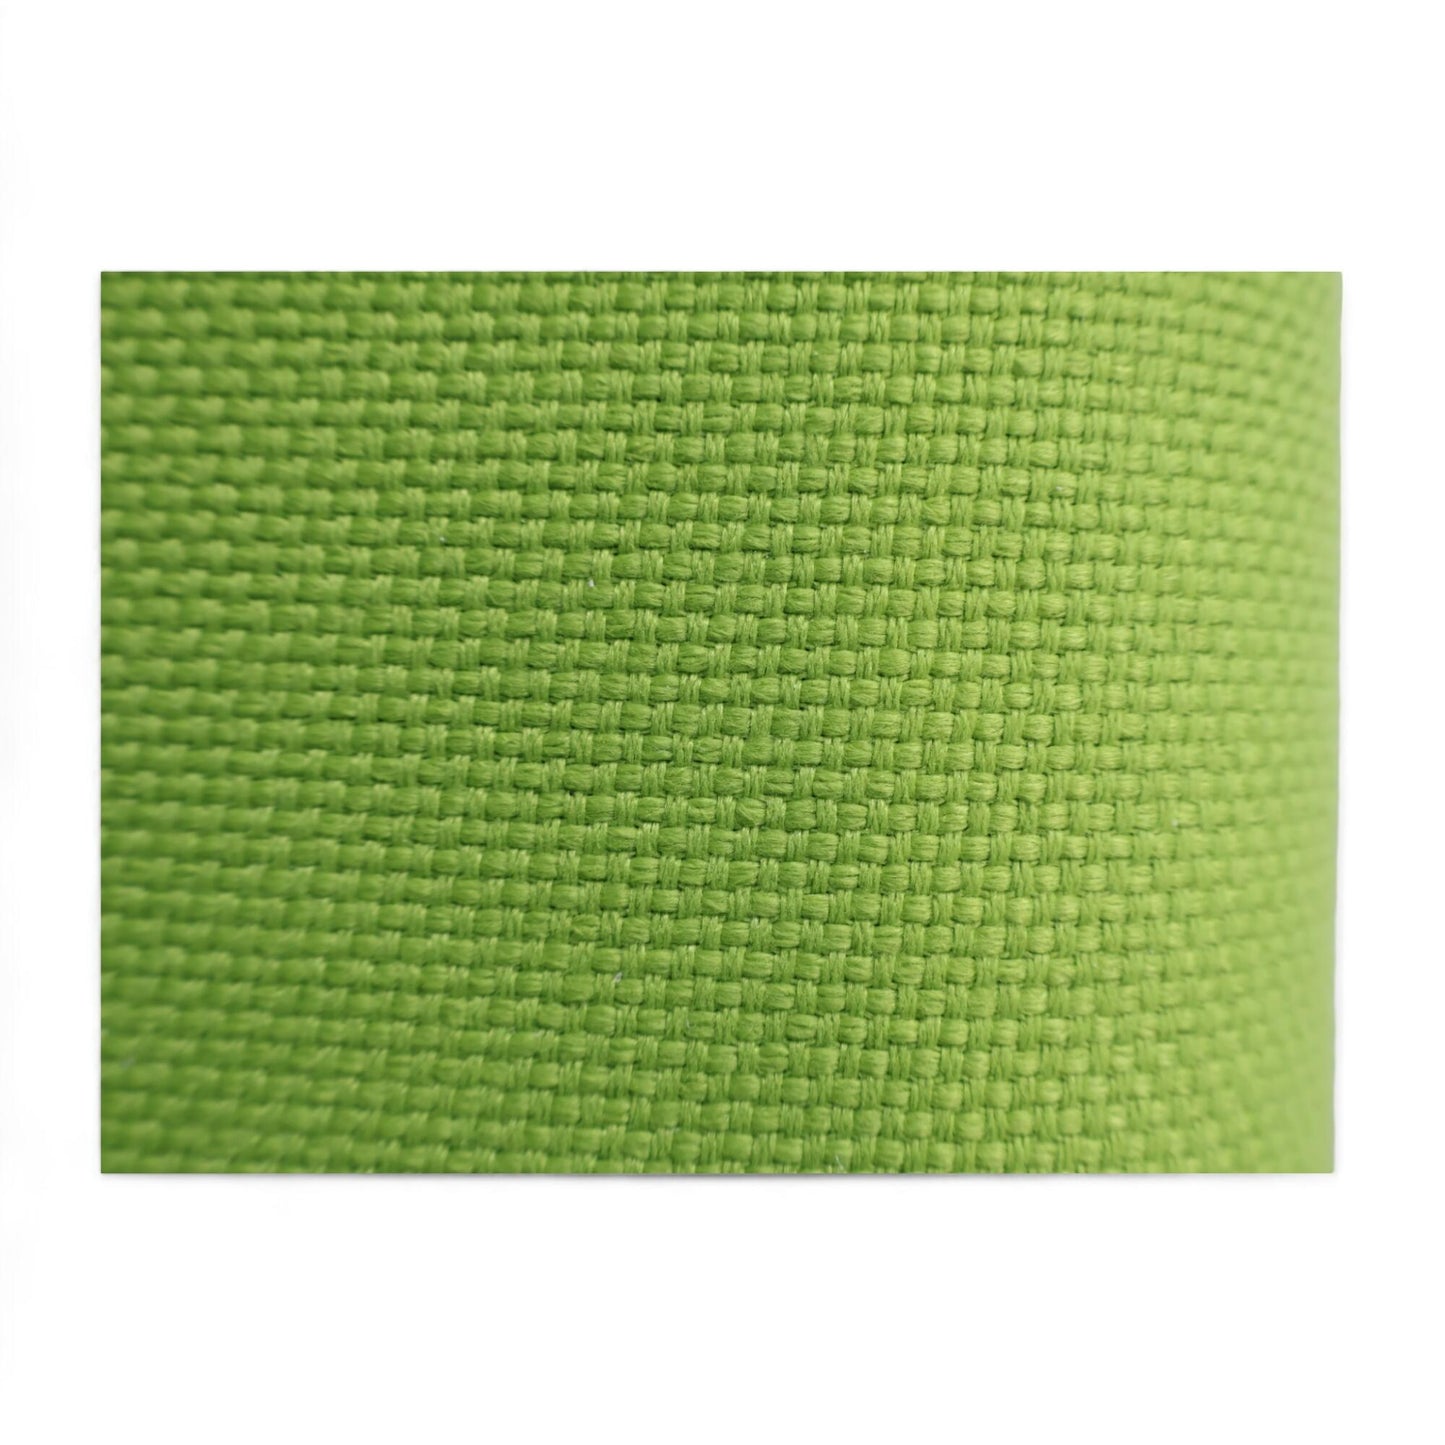 Nyrenset | Vitra Alcove Sofa 3-seter med høy rygg i grønn